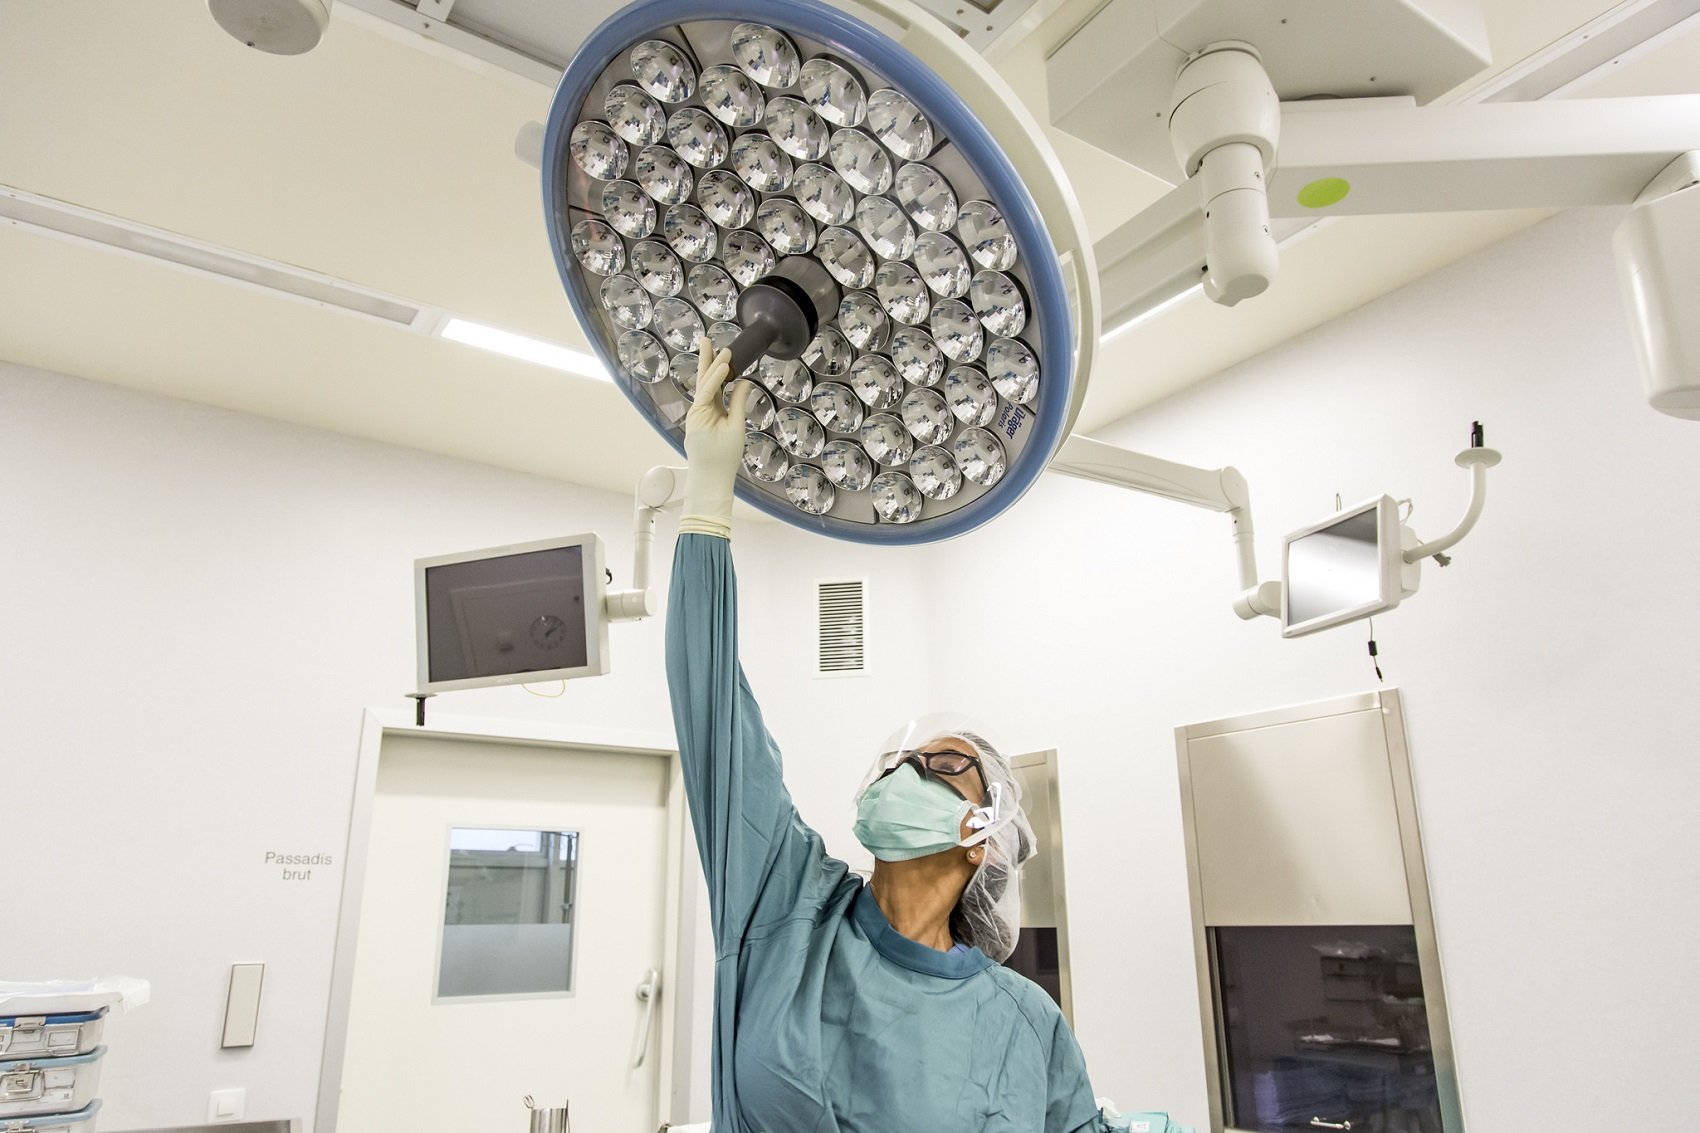 És possible aplicar la realitat augmentada en cirurgies?